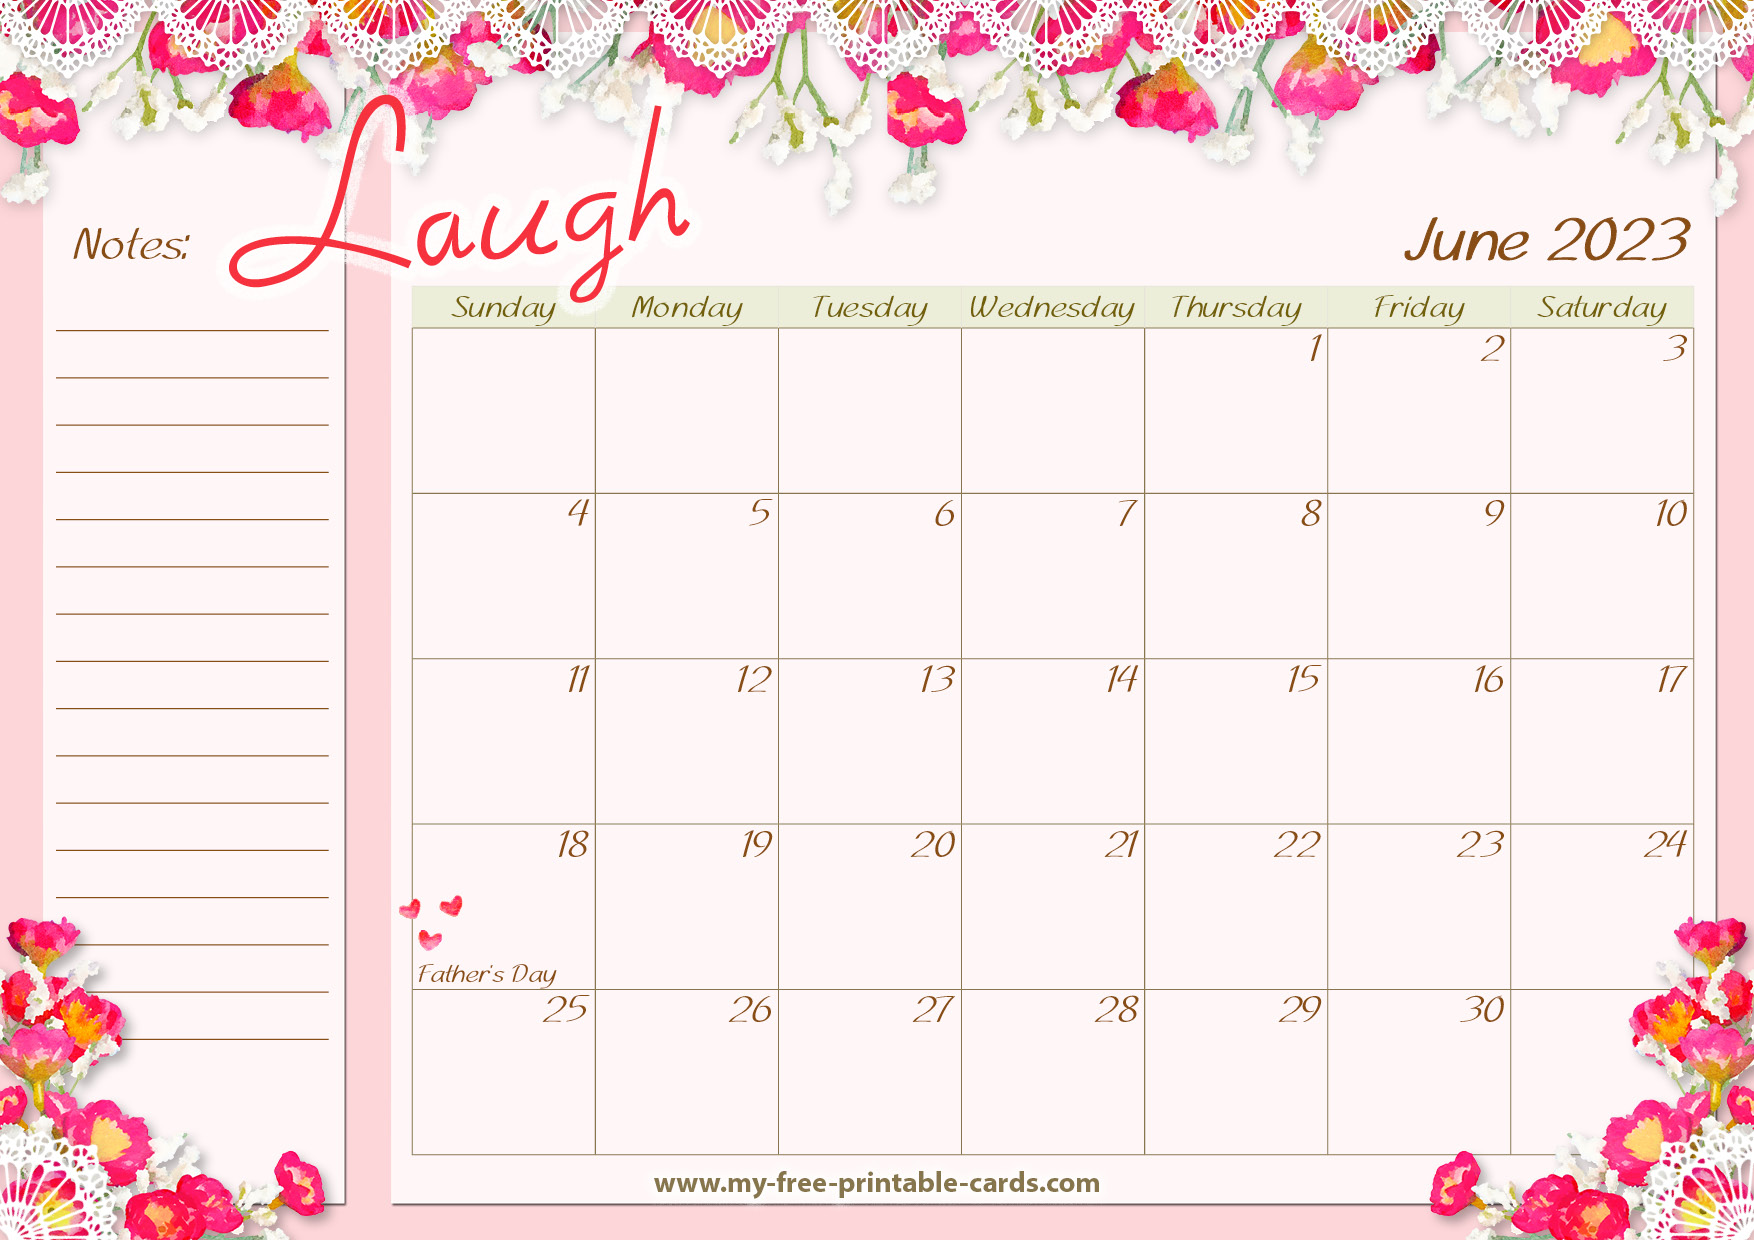 Printable Calendar June 2023